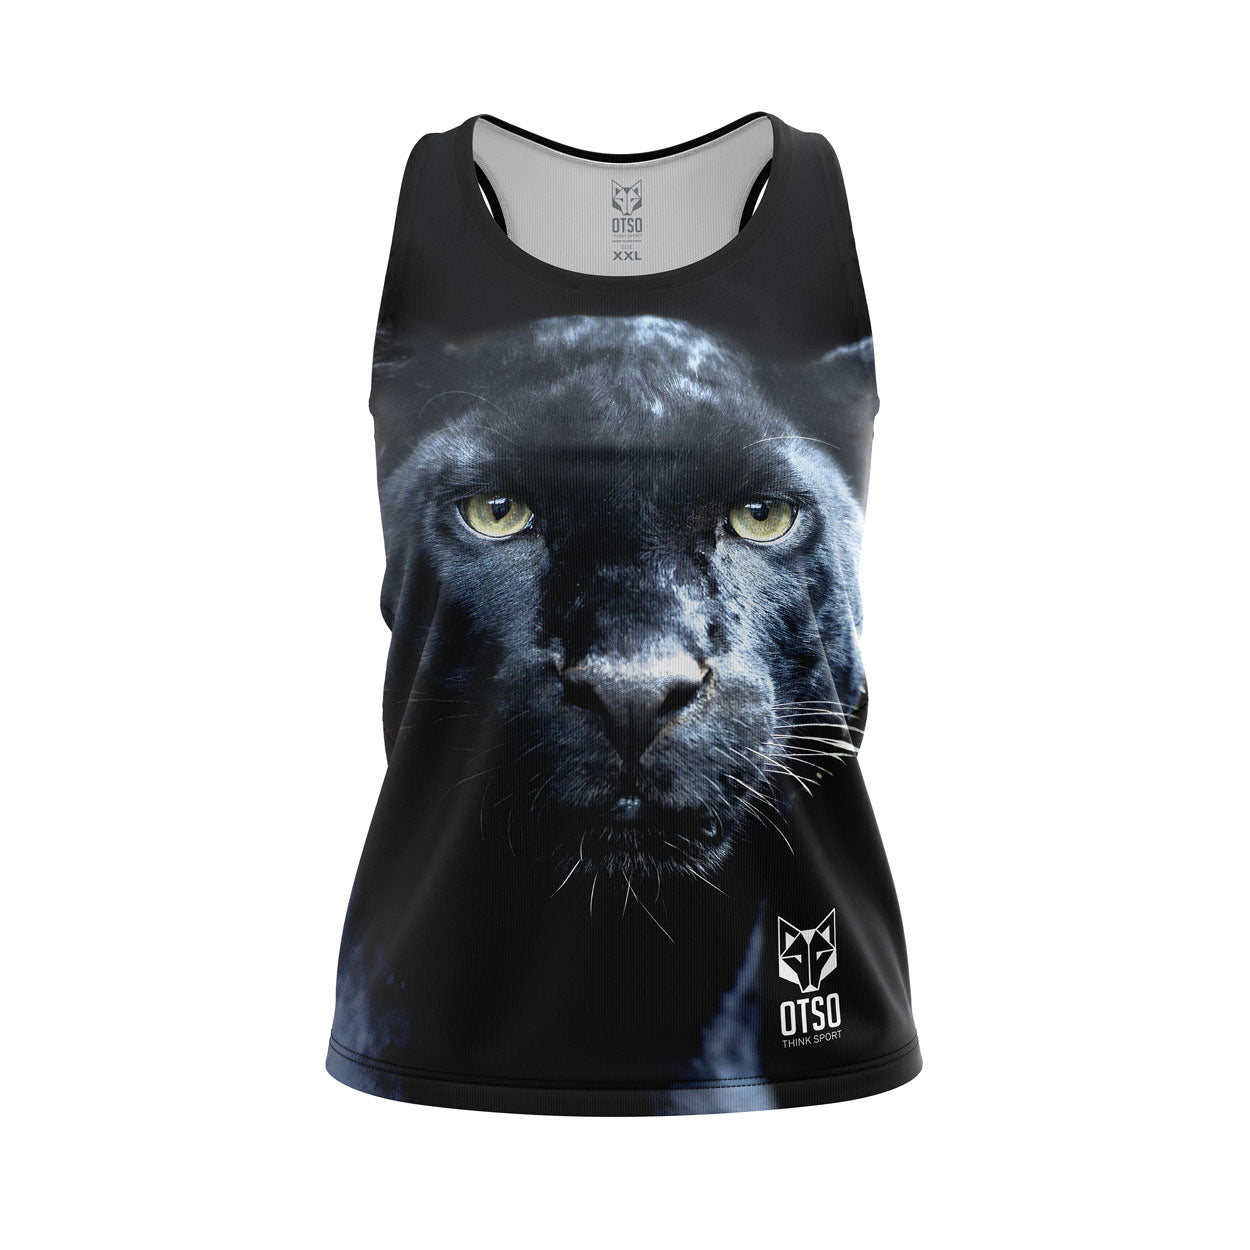 Camiseta sin mangas mujer - Panther